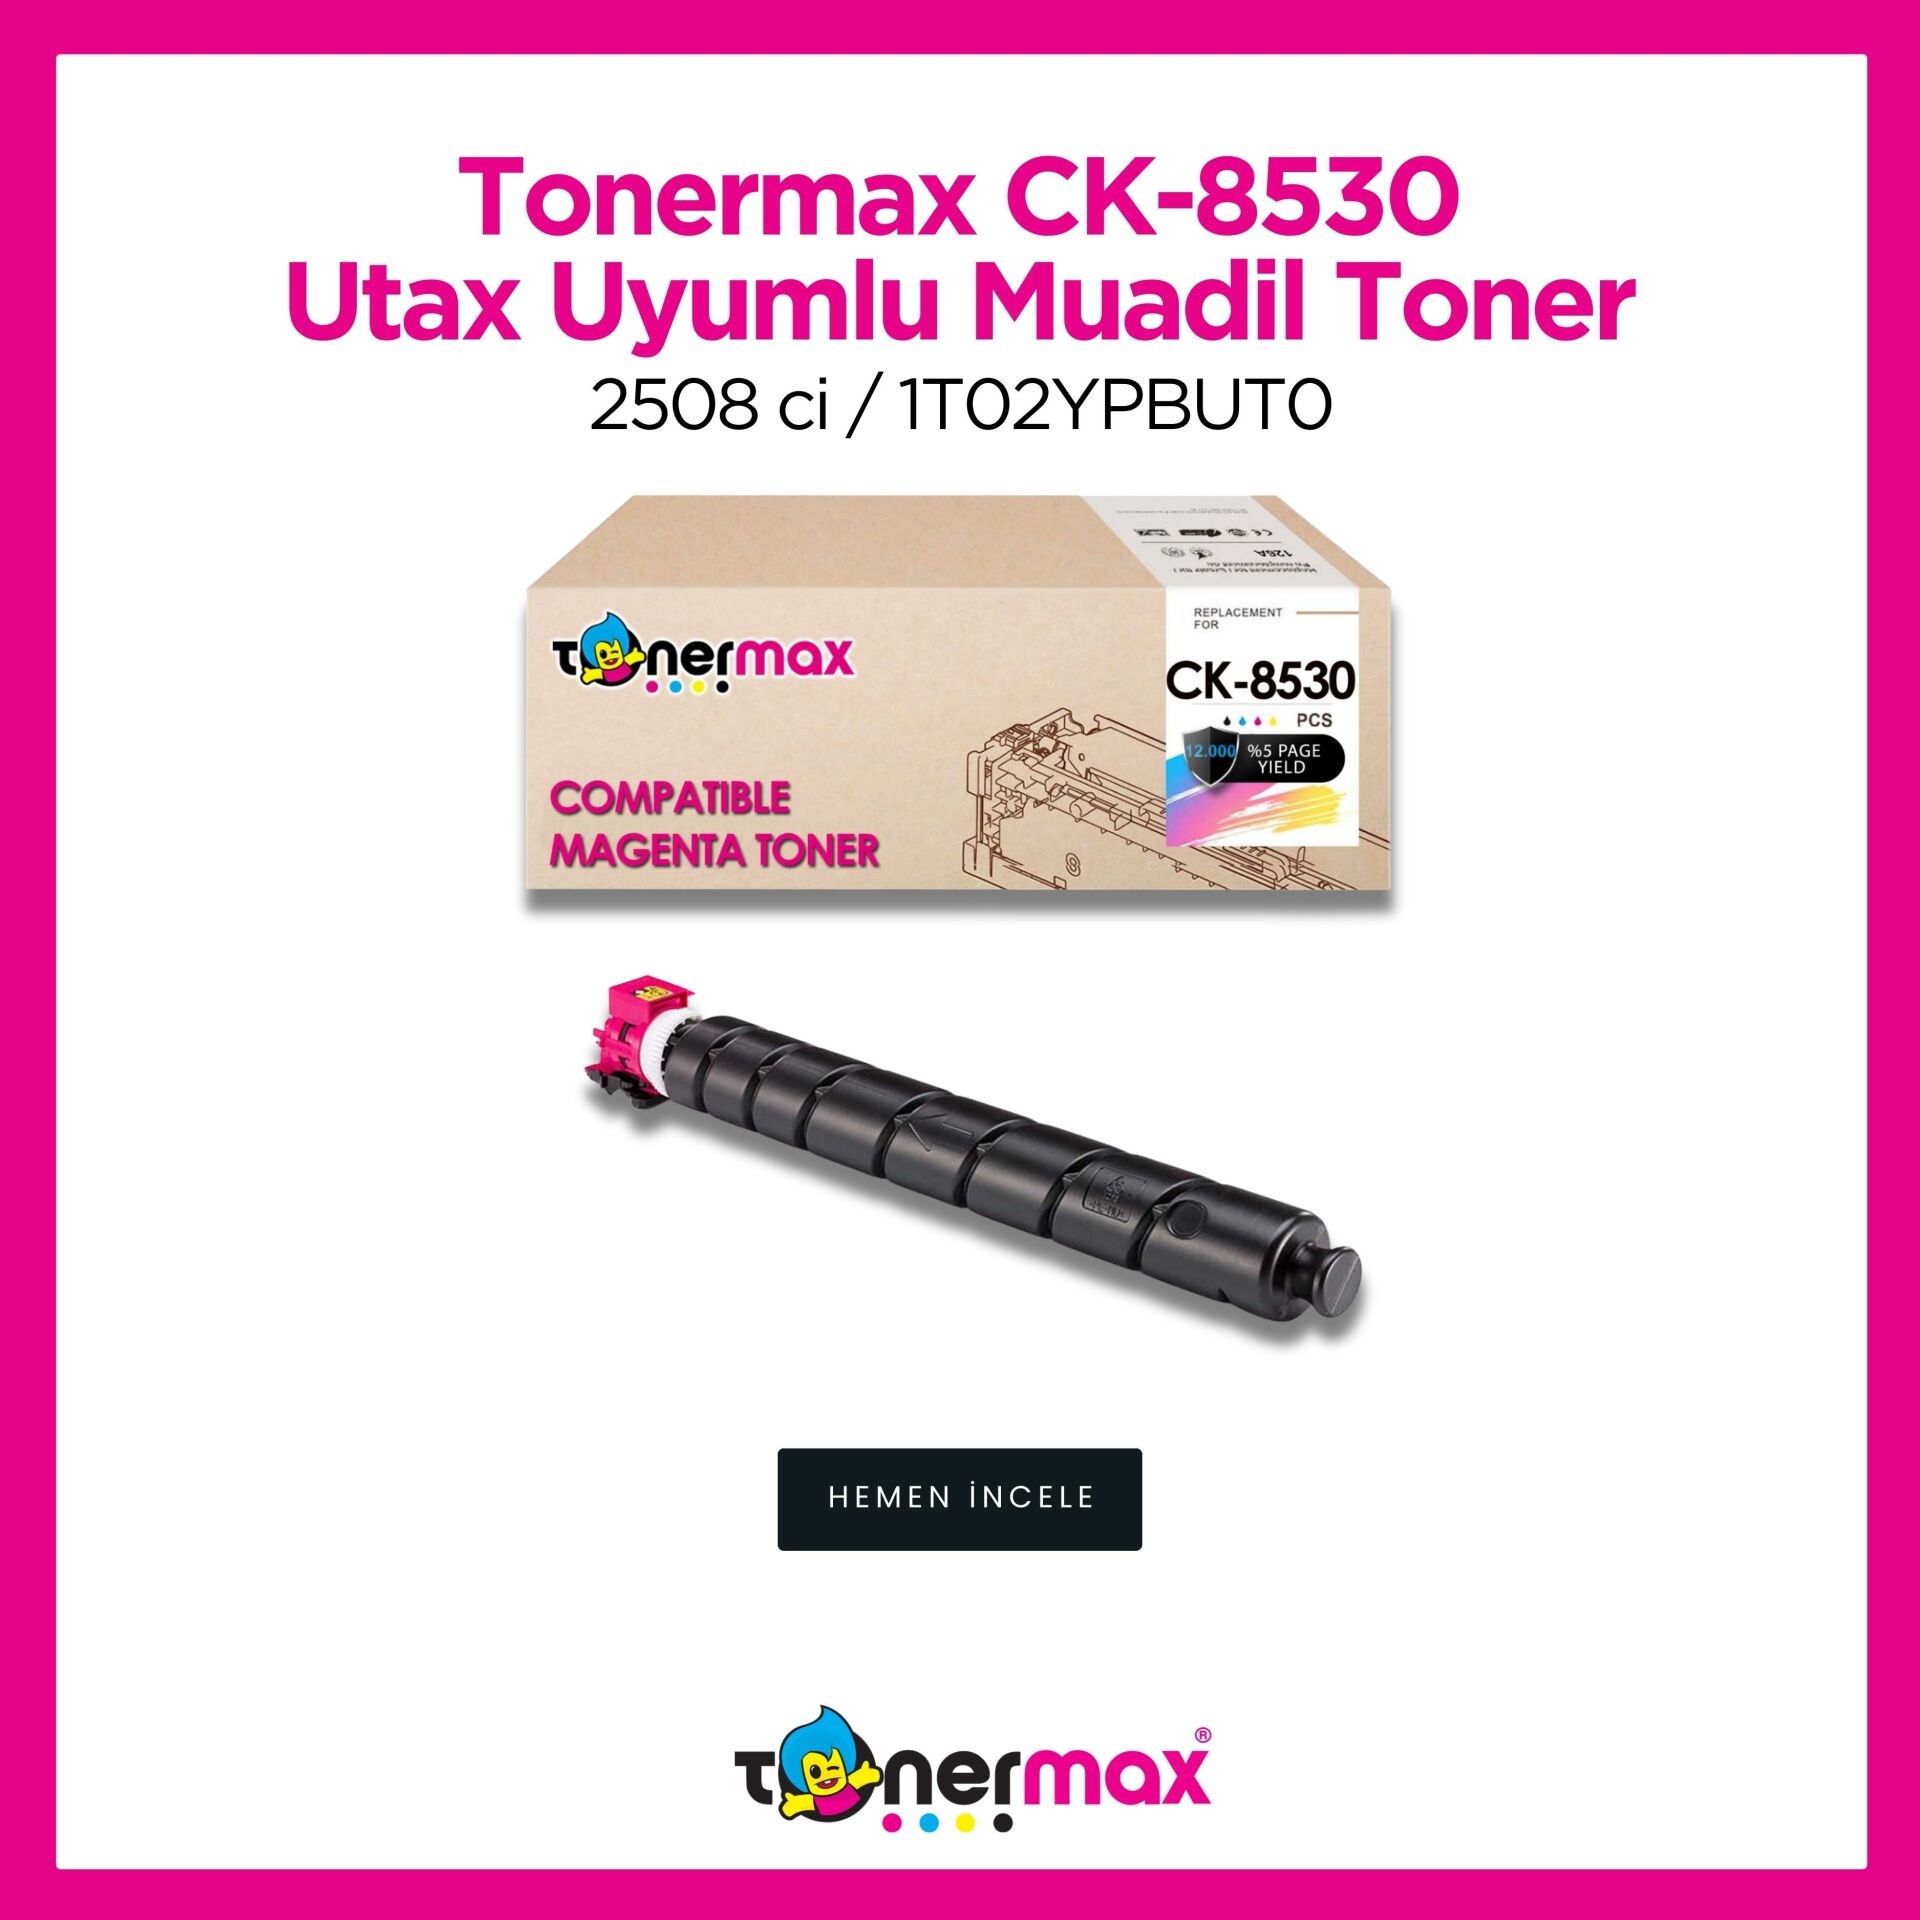 Utax CK-8530 Muadil Toner Kırmızı/ 2508 ci / 1T02YPBUT0